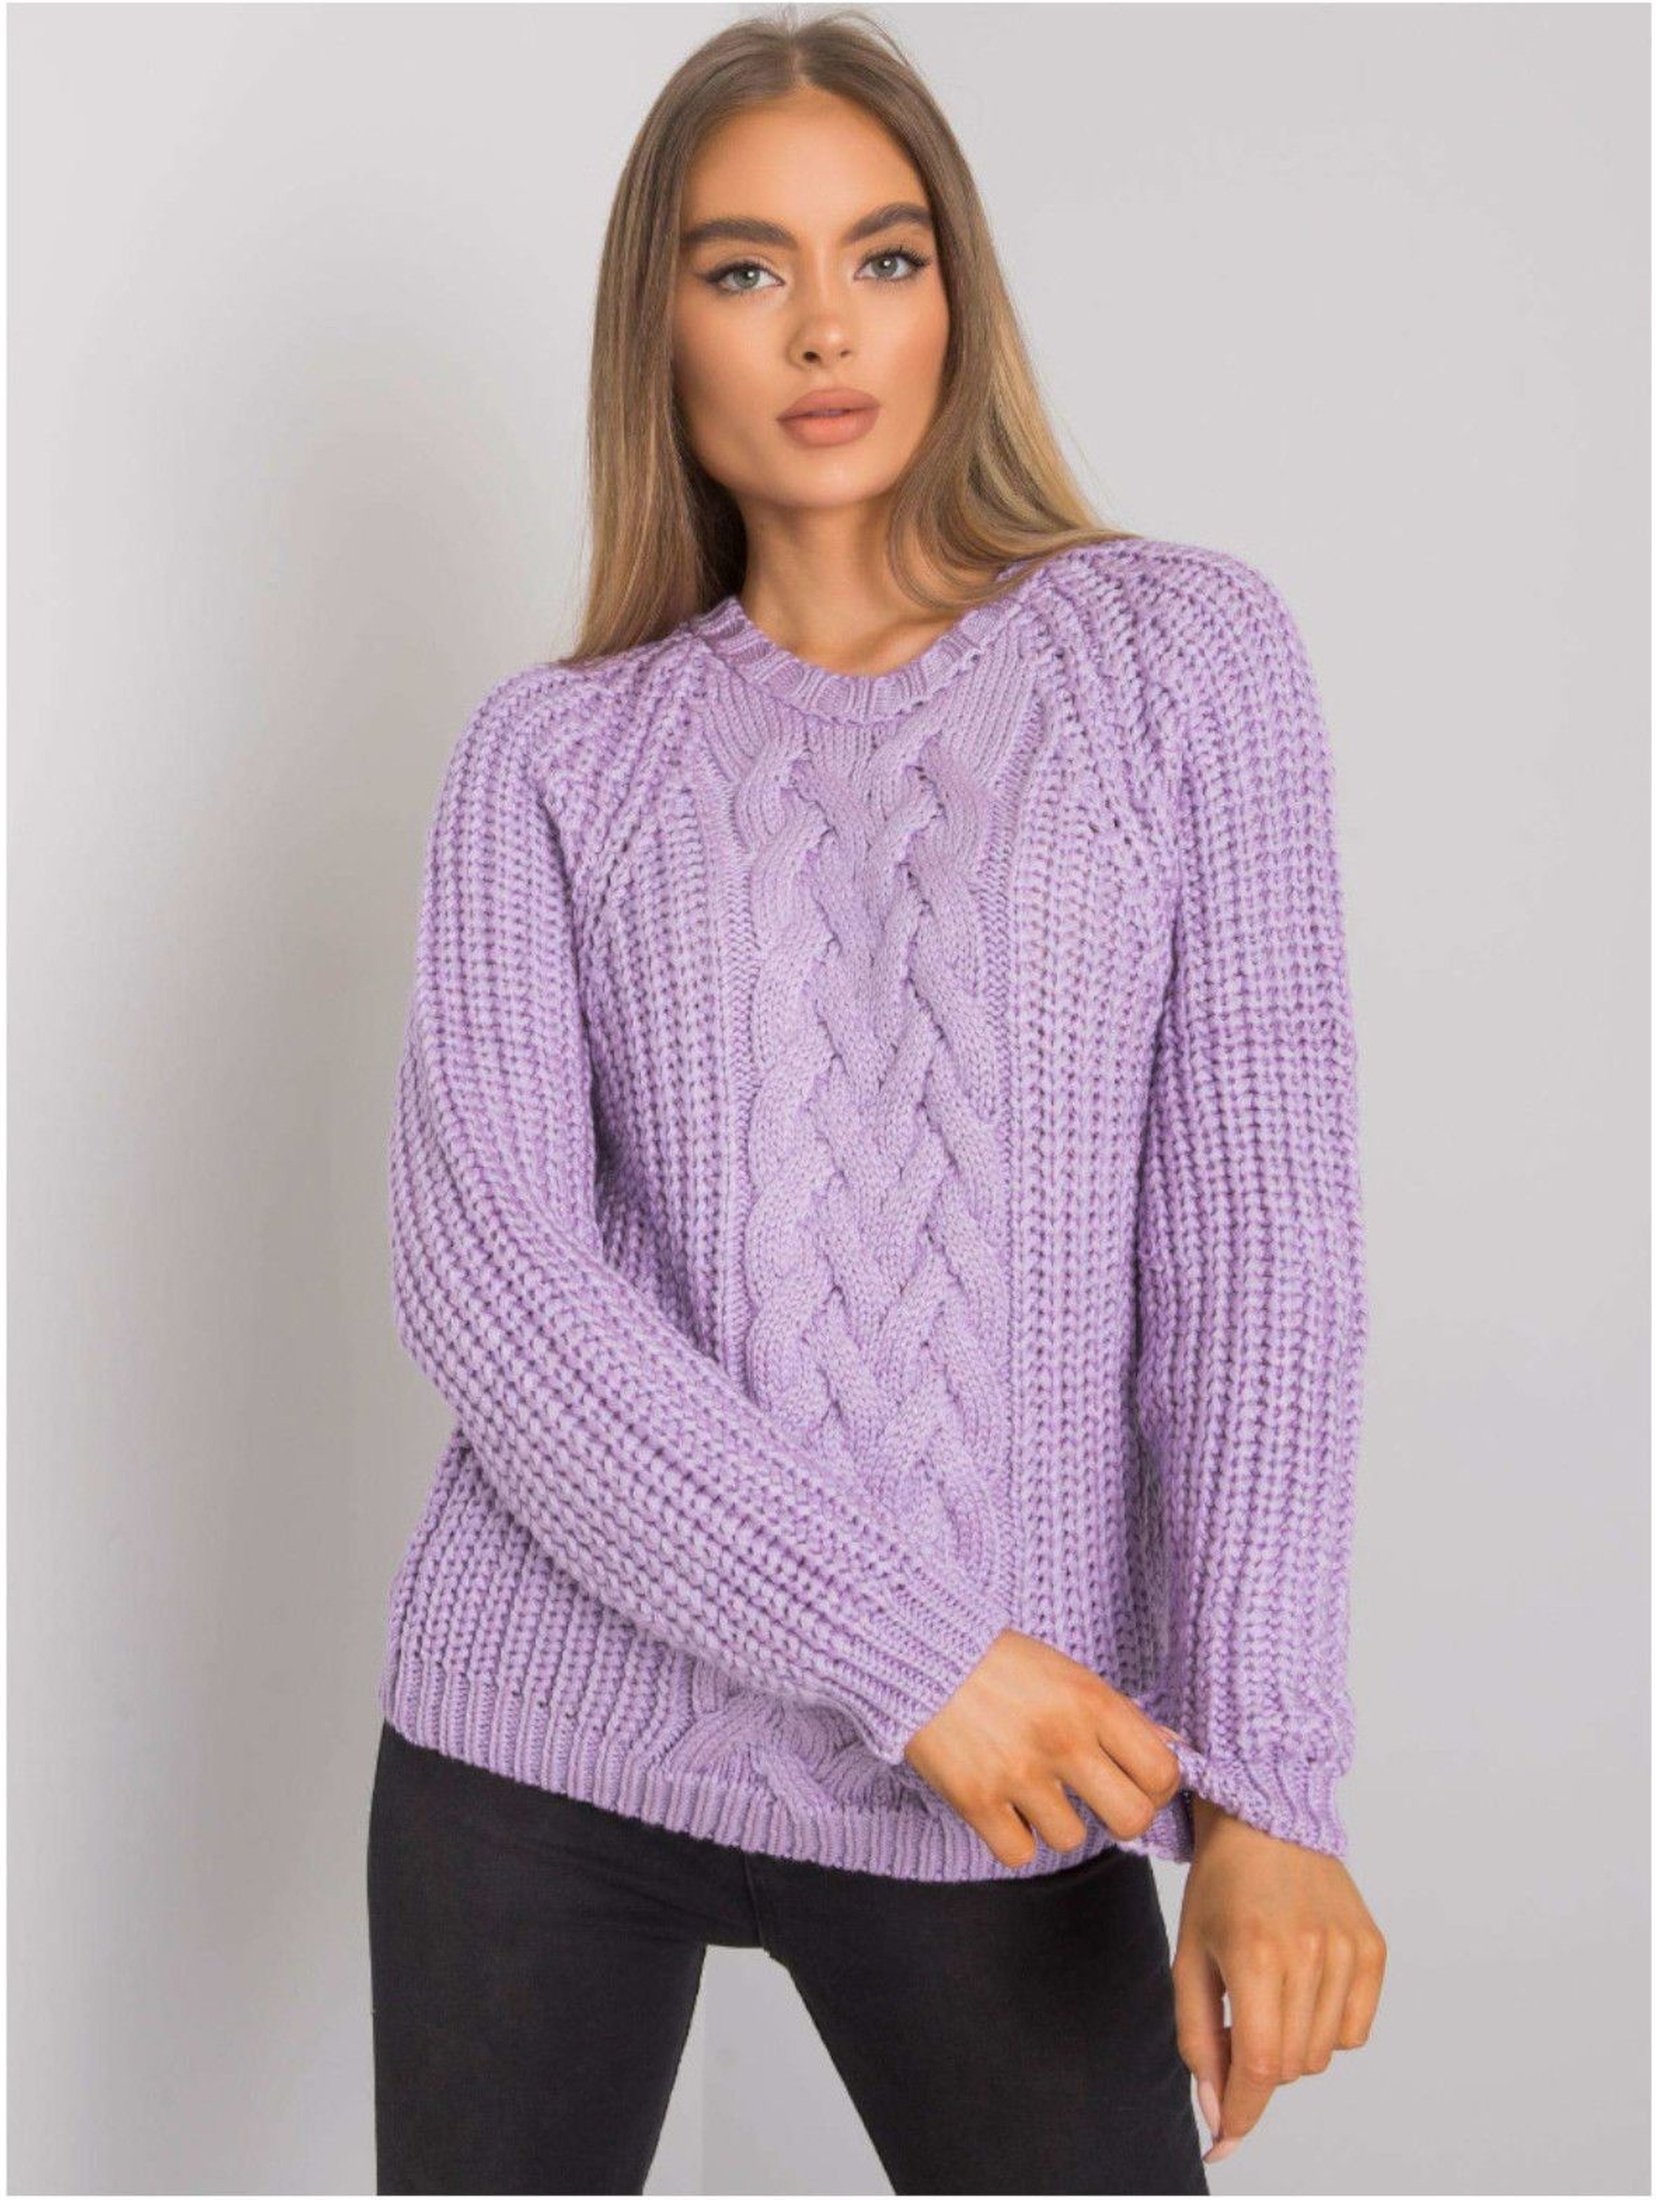 Luźny sweter damski w kolorze fioletowym